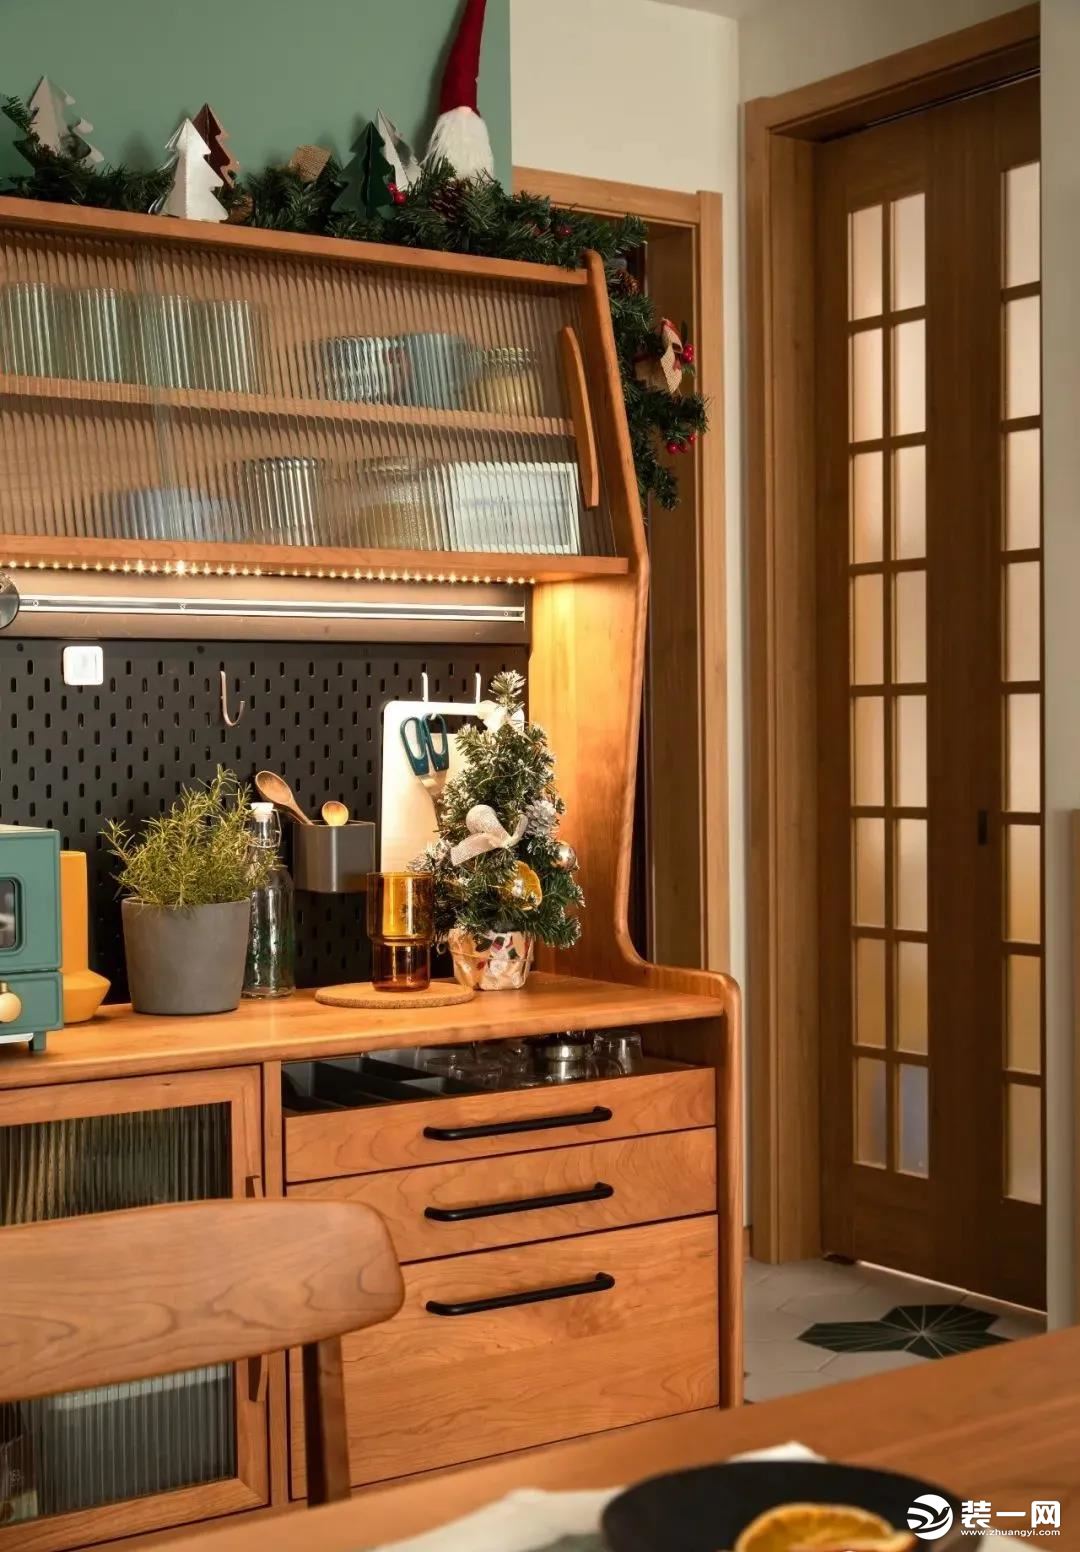 3胡桃木+长虹玻璃的餐边柜，自然复古雅致，颜值极高。这样一个小小的备餐茶水区，兼具了实用与美观的体验